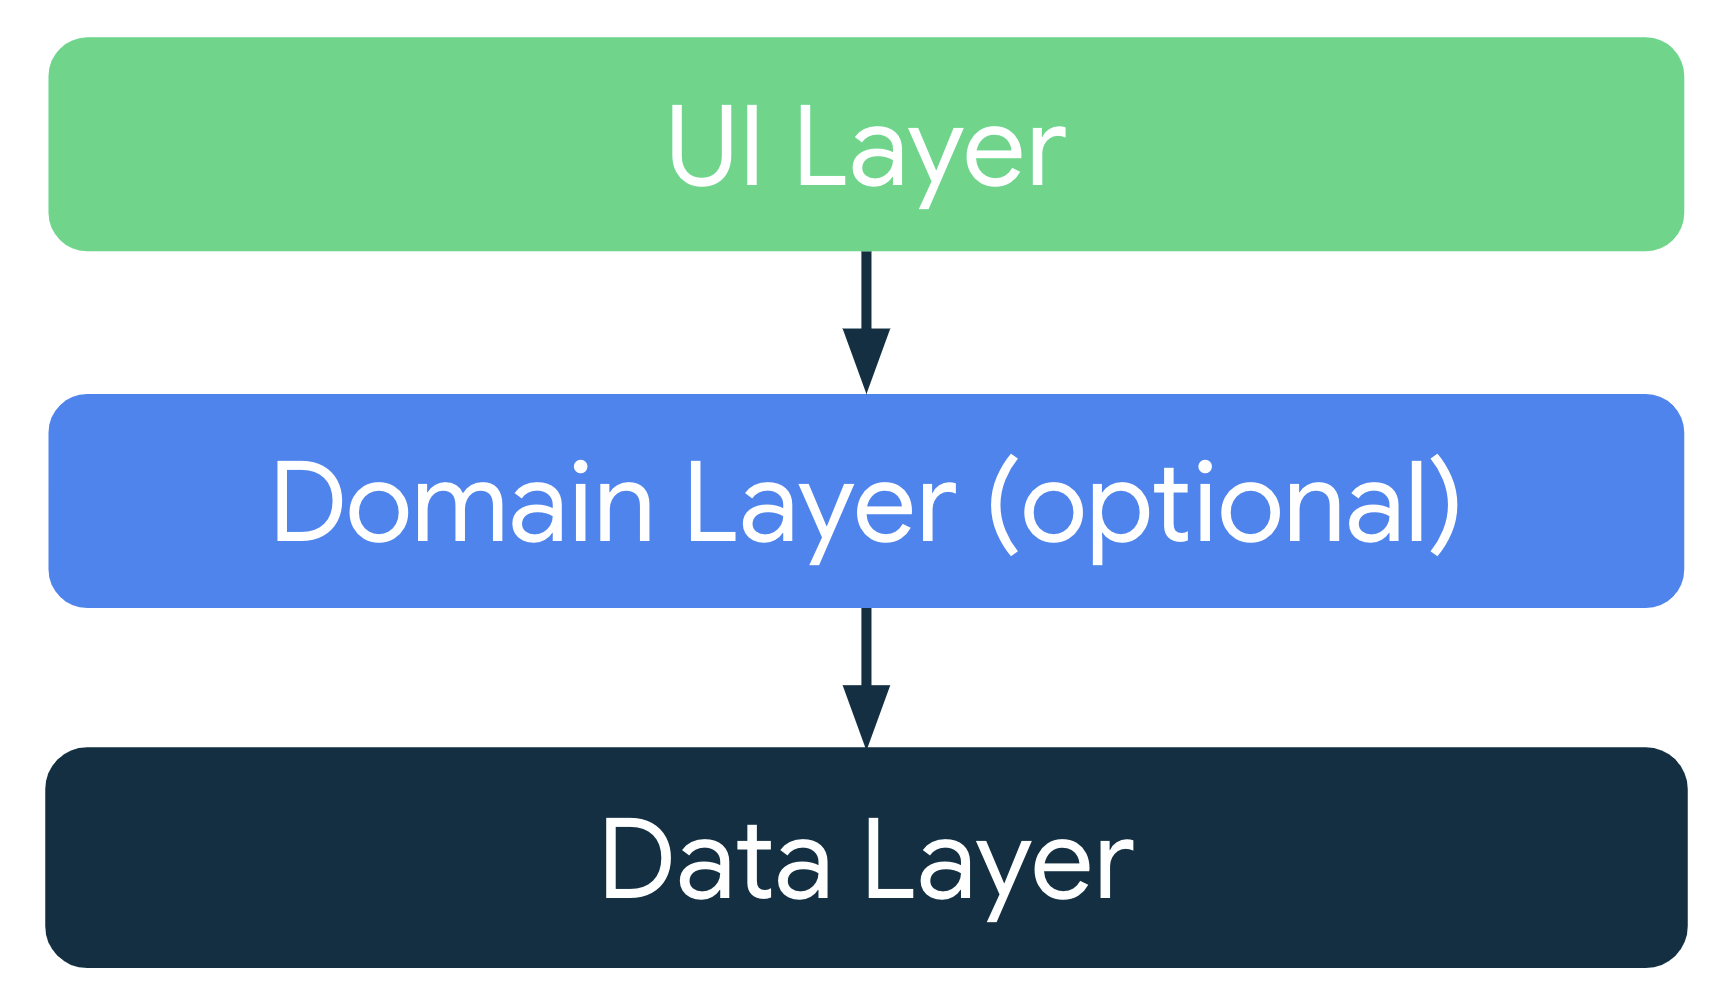 Dans une architecture d'application classique, la couche d'UI extrait les données de l'application de la couche de données ou de la couche de domaine facultative, située entre la couche d'UI et la couche de données.